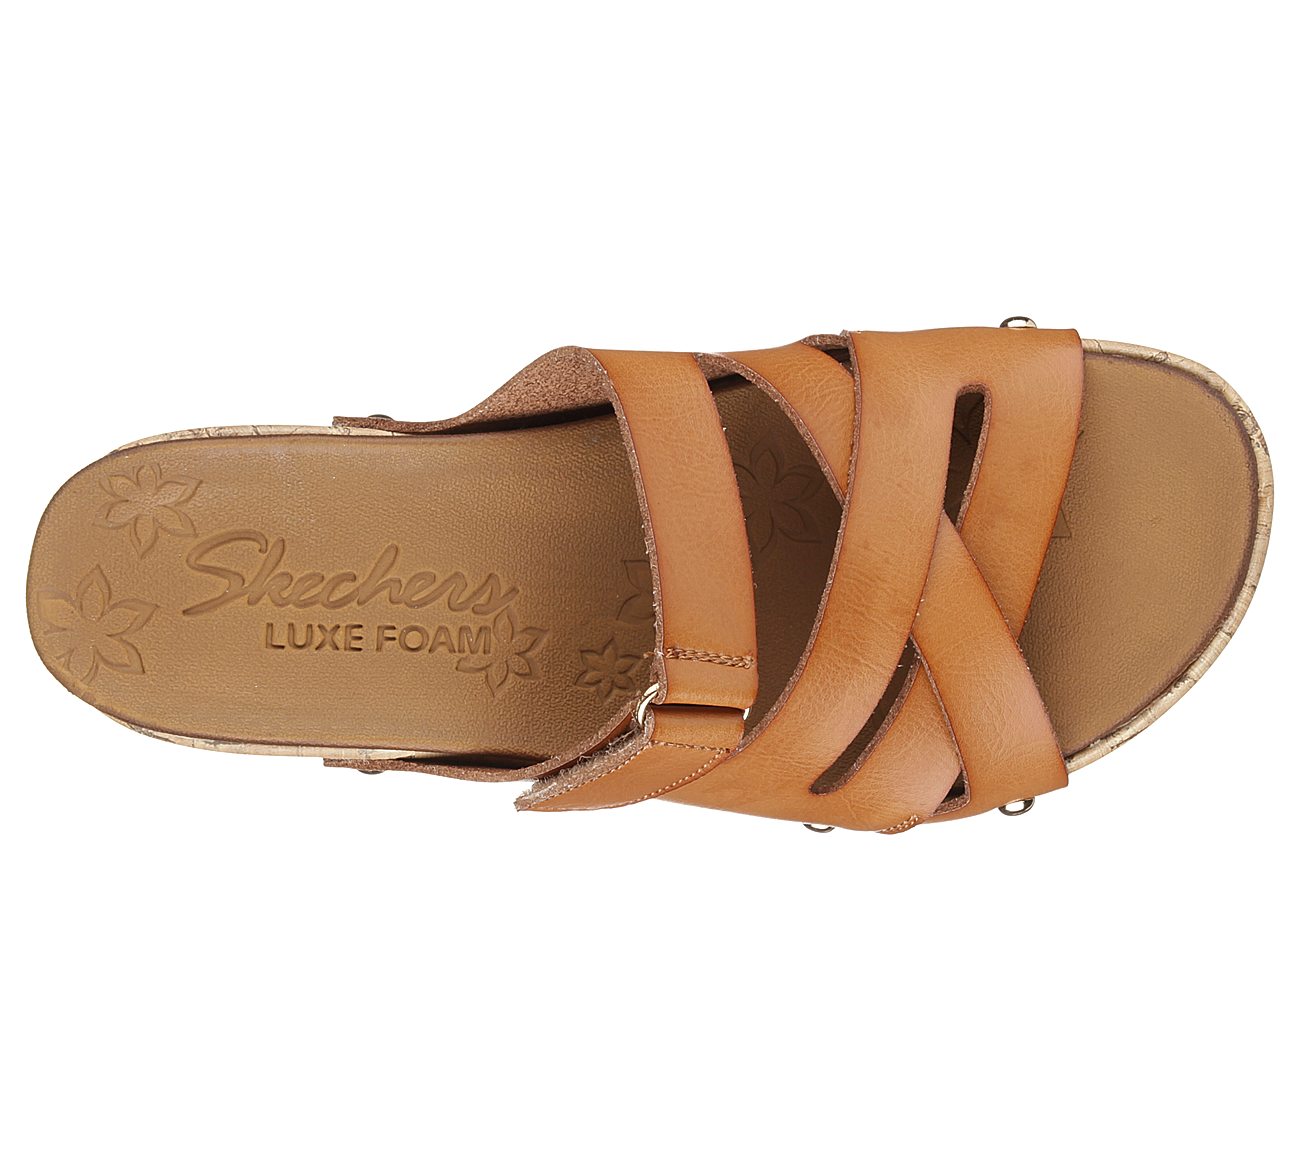 skechers luxe foam wedge sandals